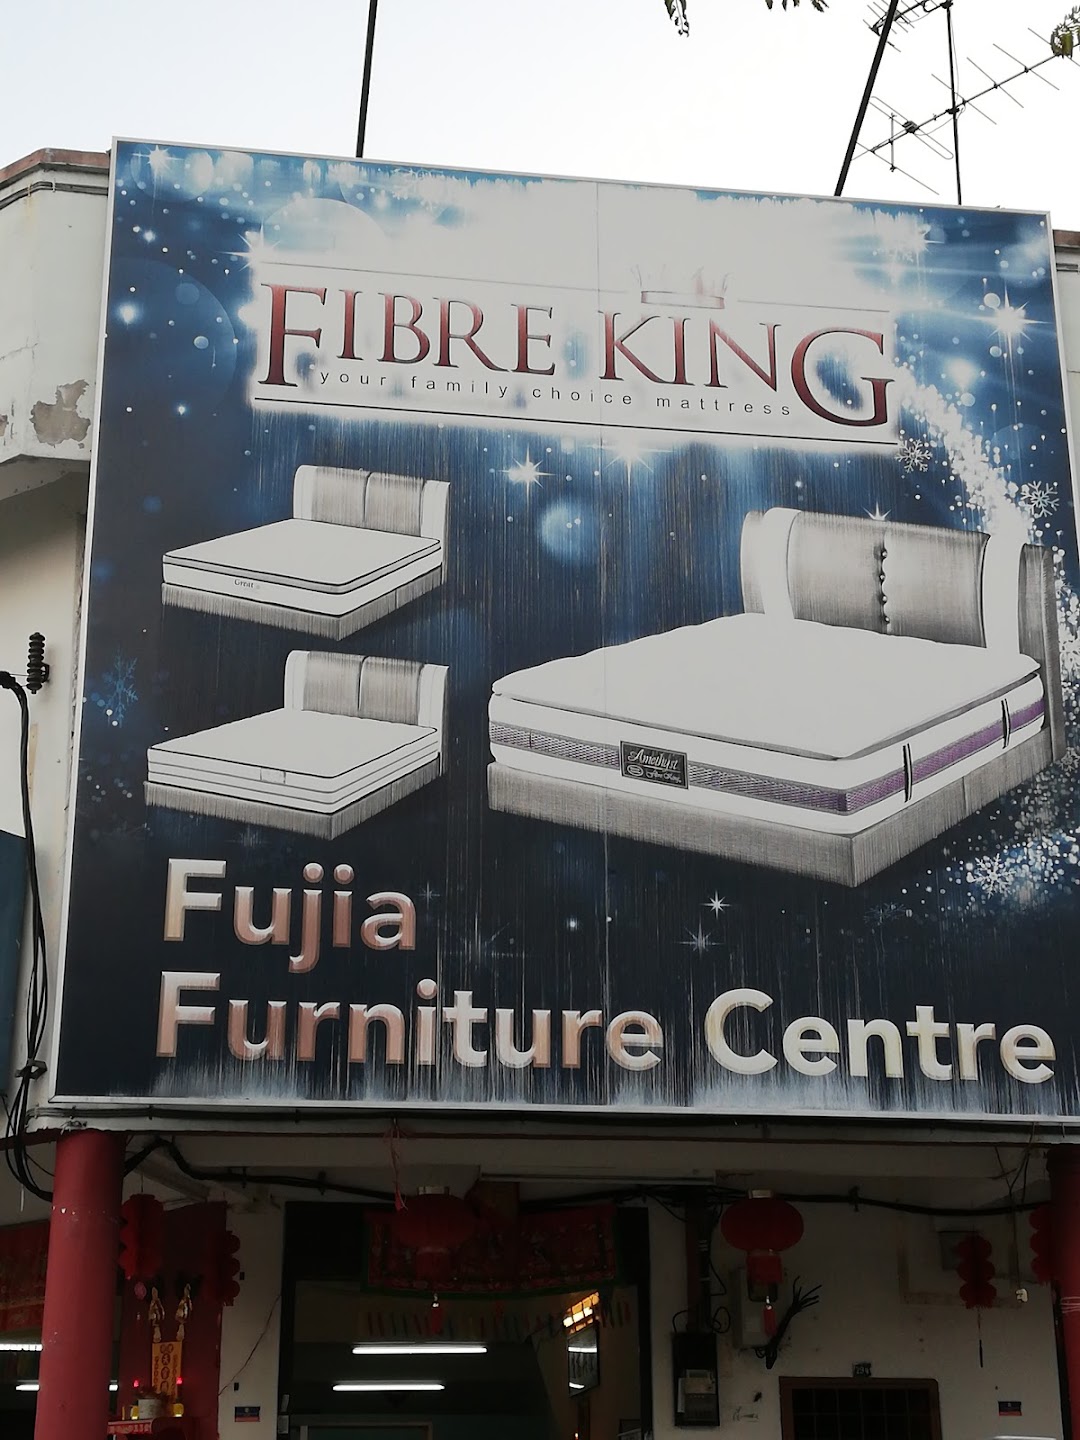 FUJIA Furniture Centre